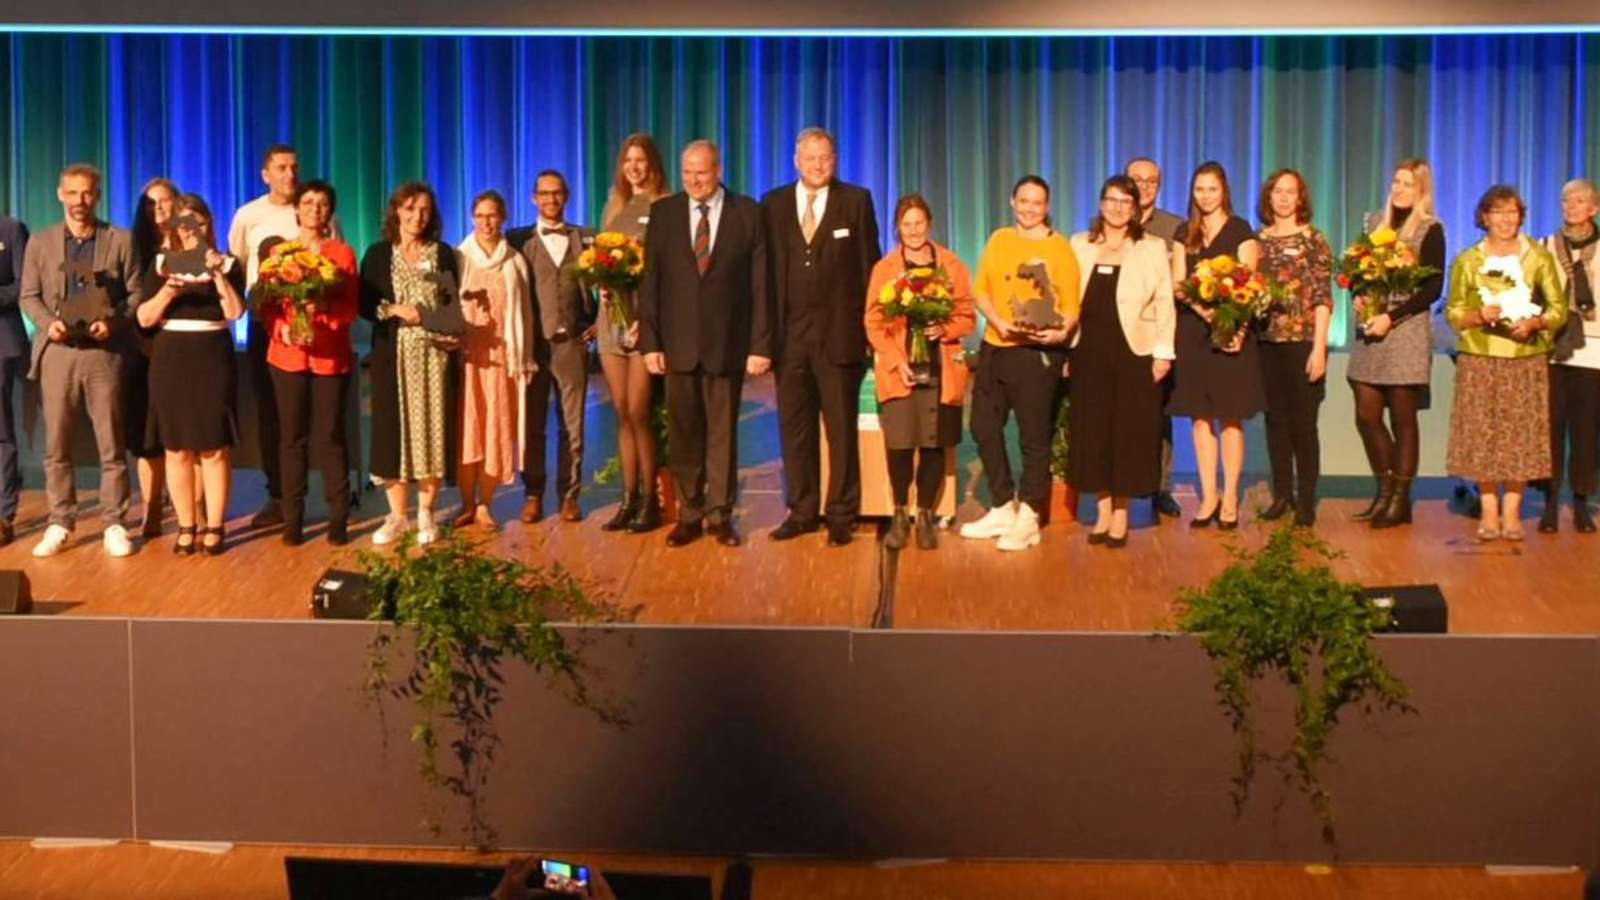 Landkreis München vergibt Zukunftspreis für Unternehmen und Initiativen